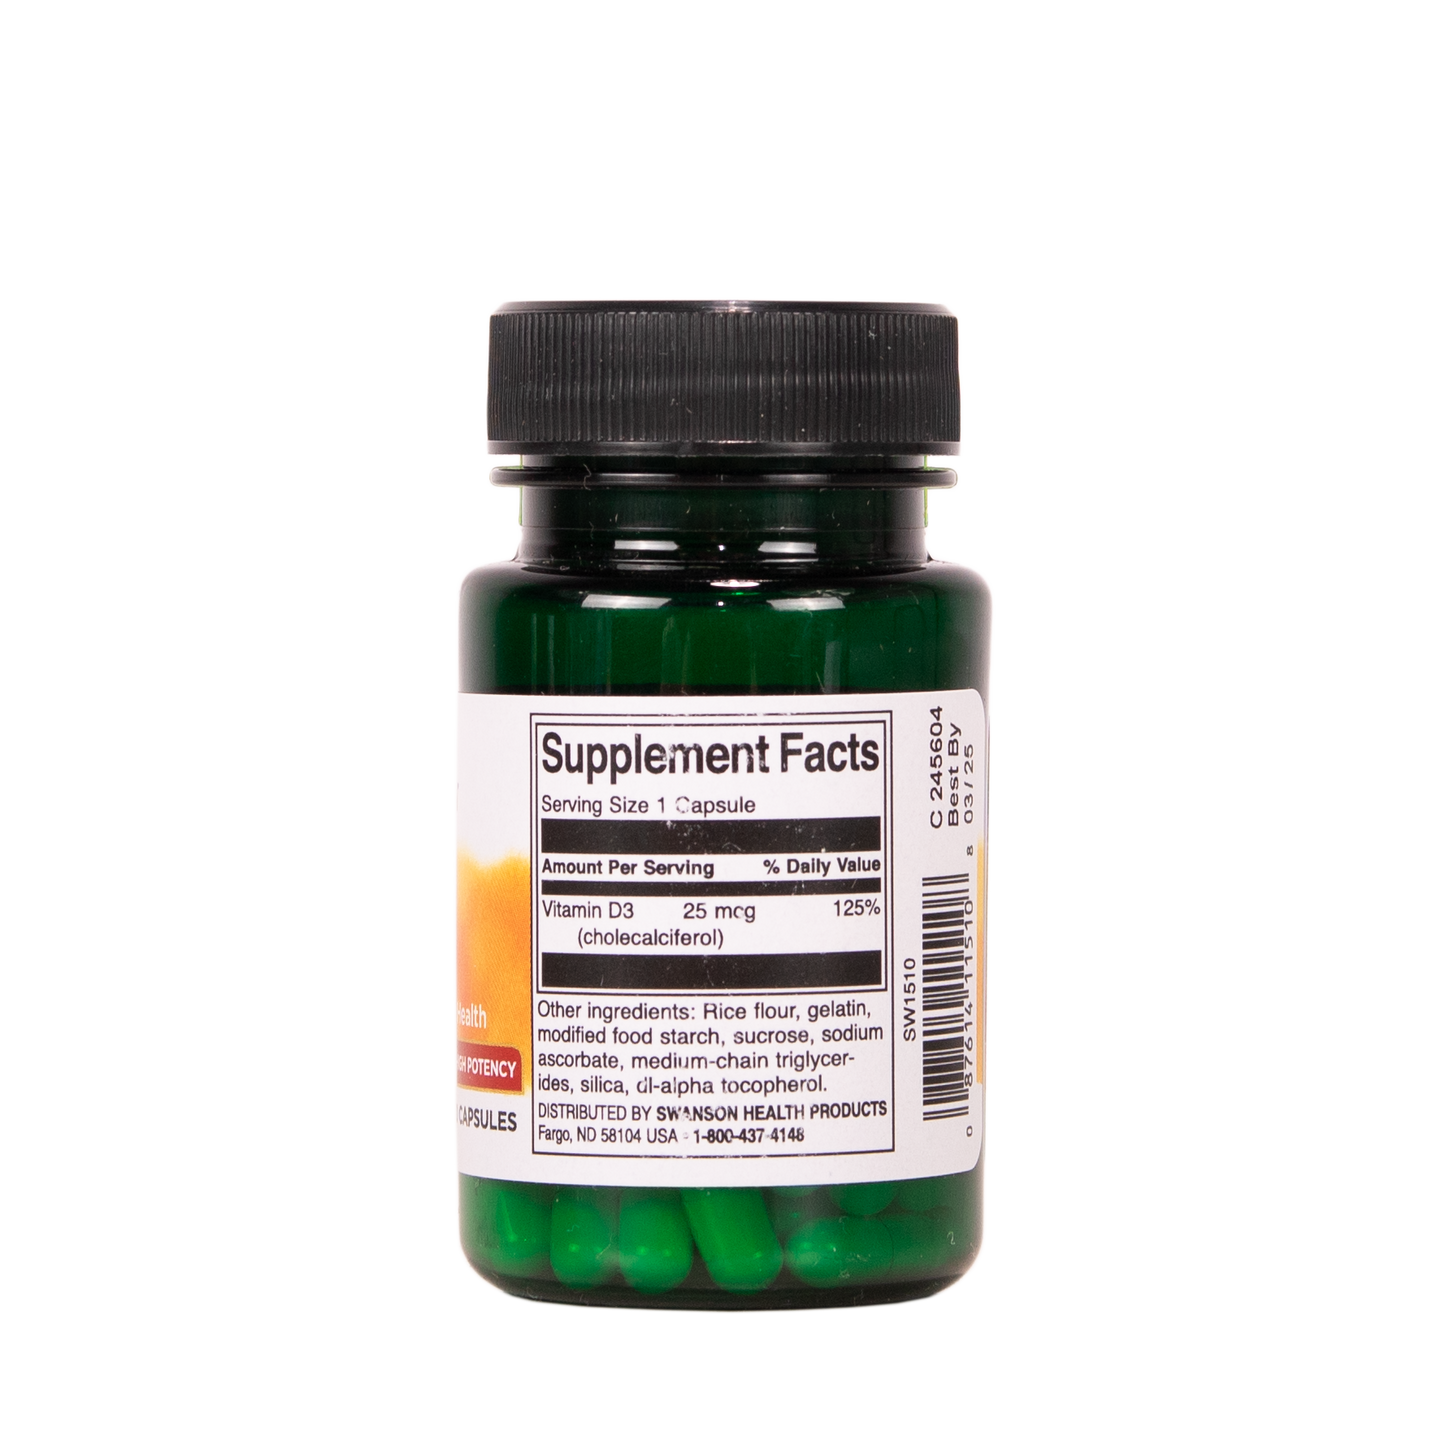 SWANSON D-vitamiini 25 g 60 kapselia w2w terveys ja hyvinvointi verkkokauppa